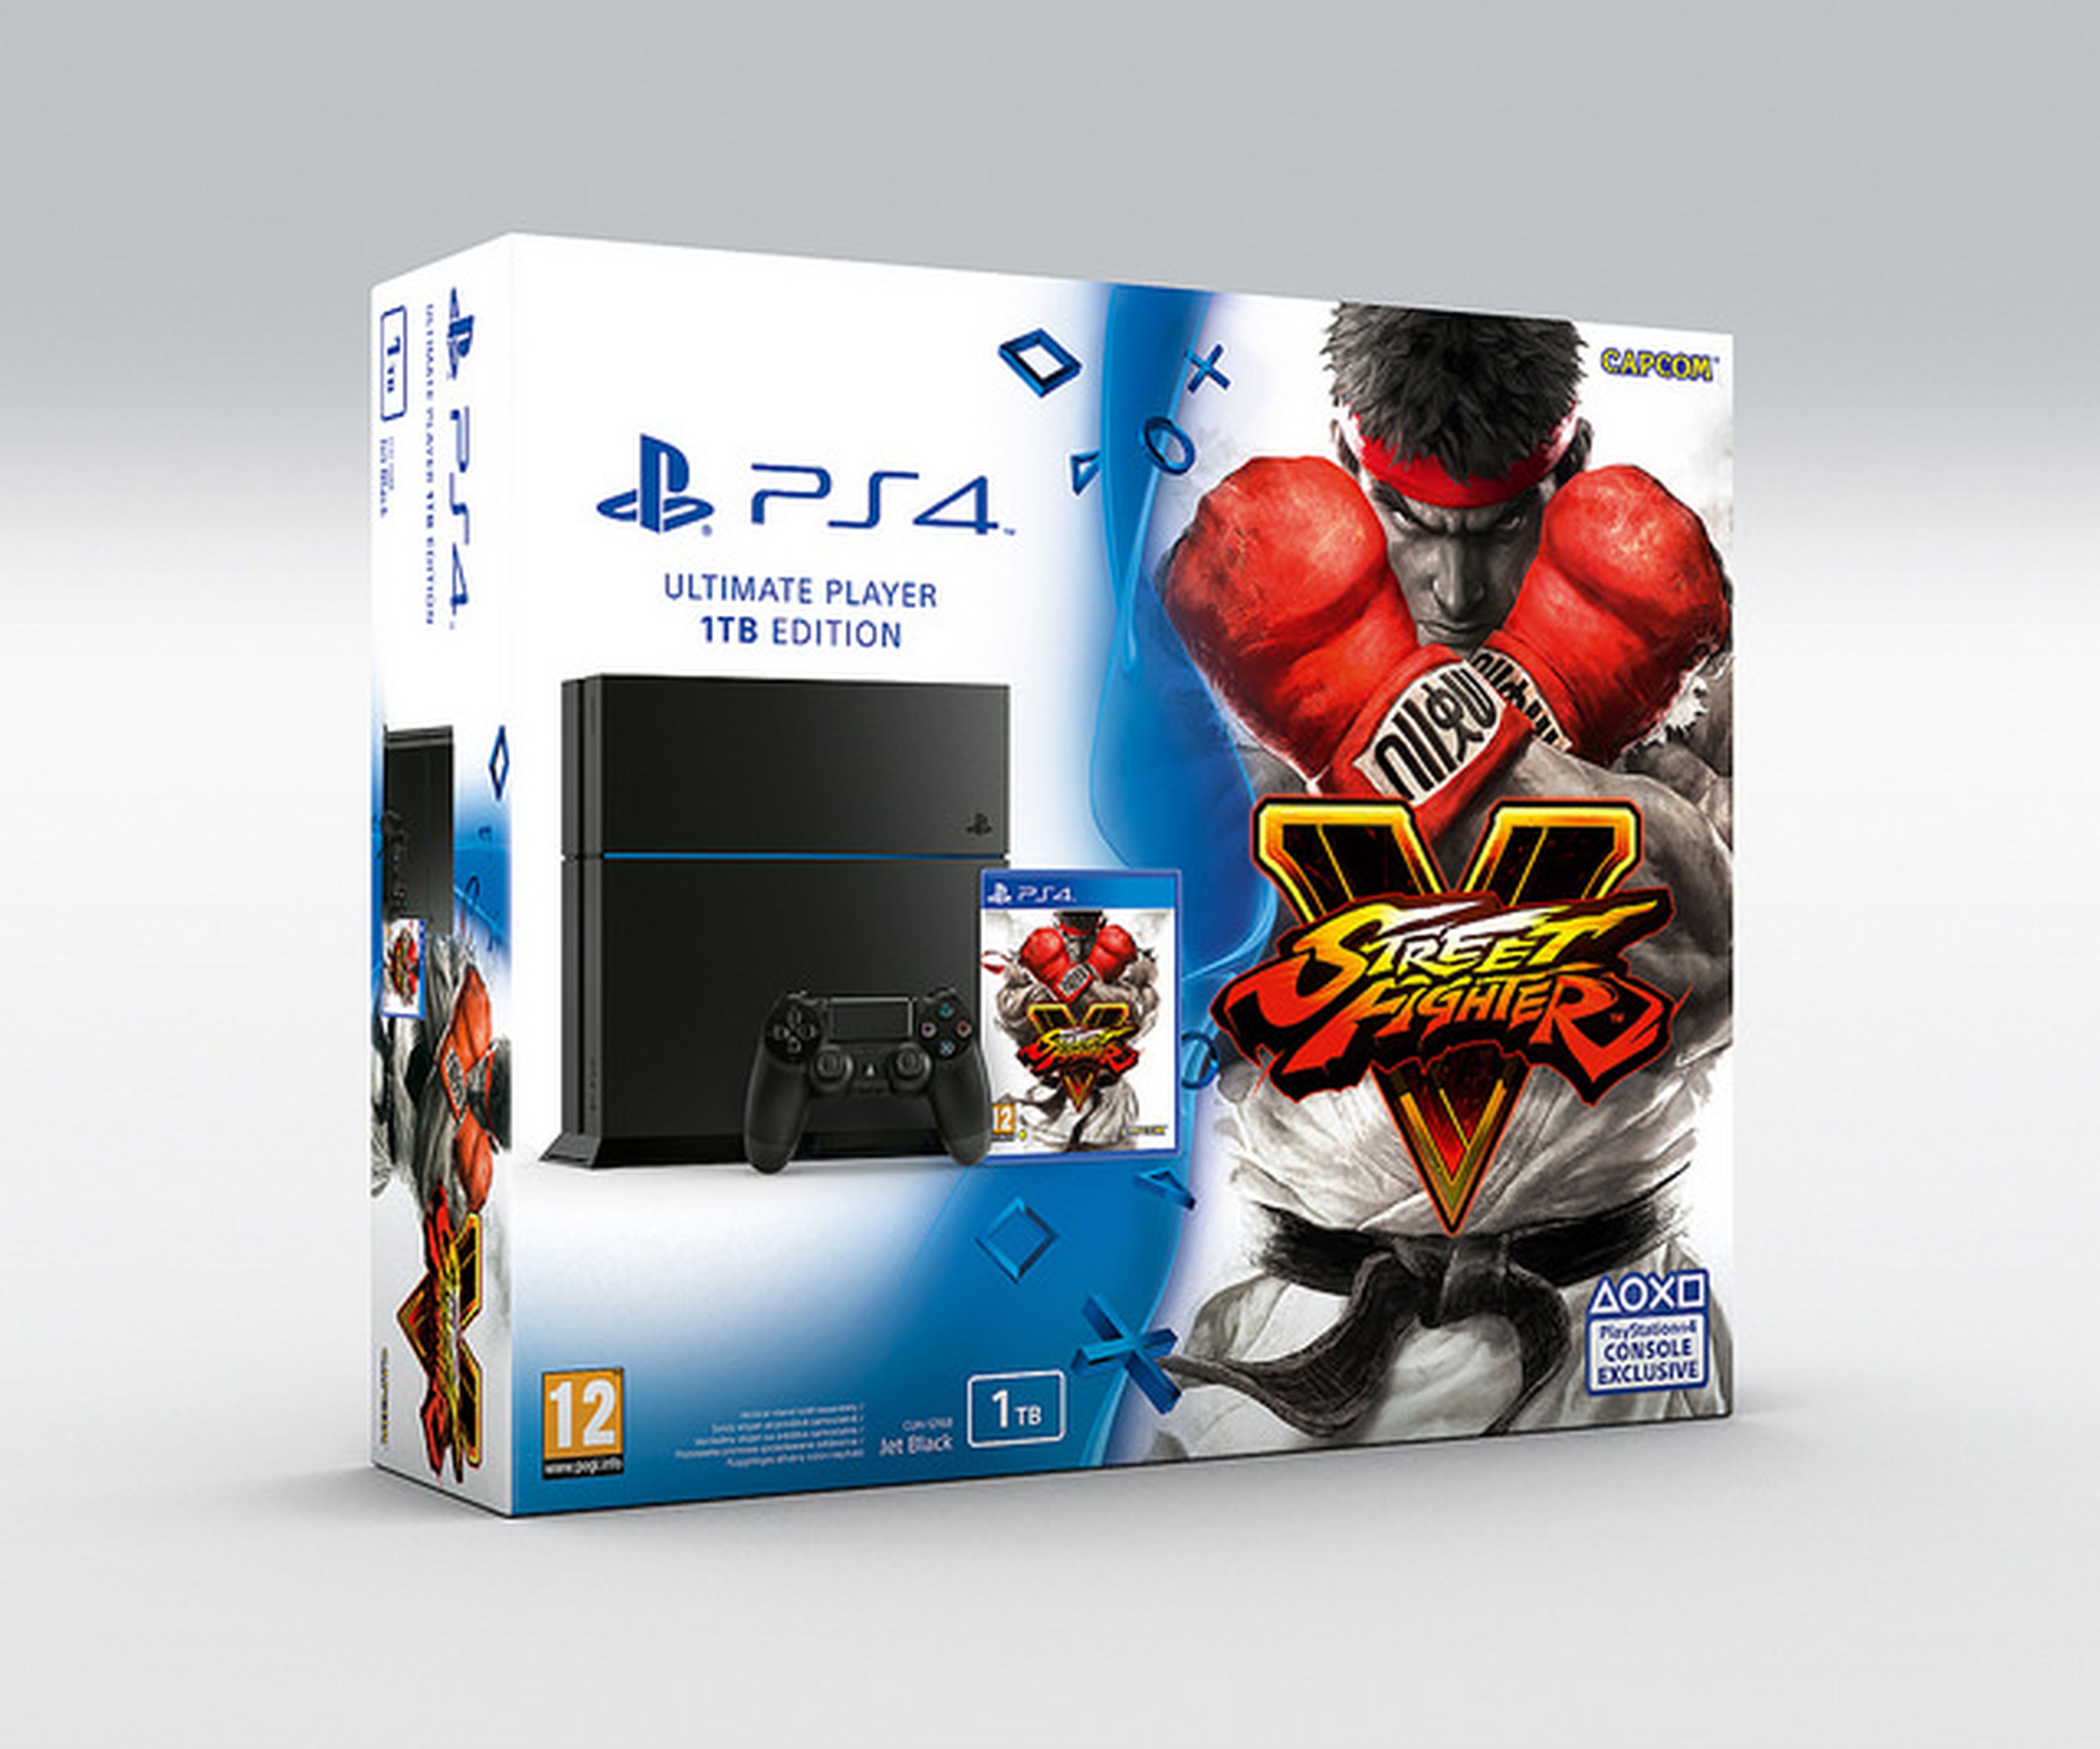 PS4 y Street Fighter V en un nuevo pack